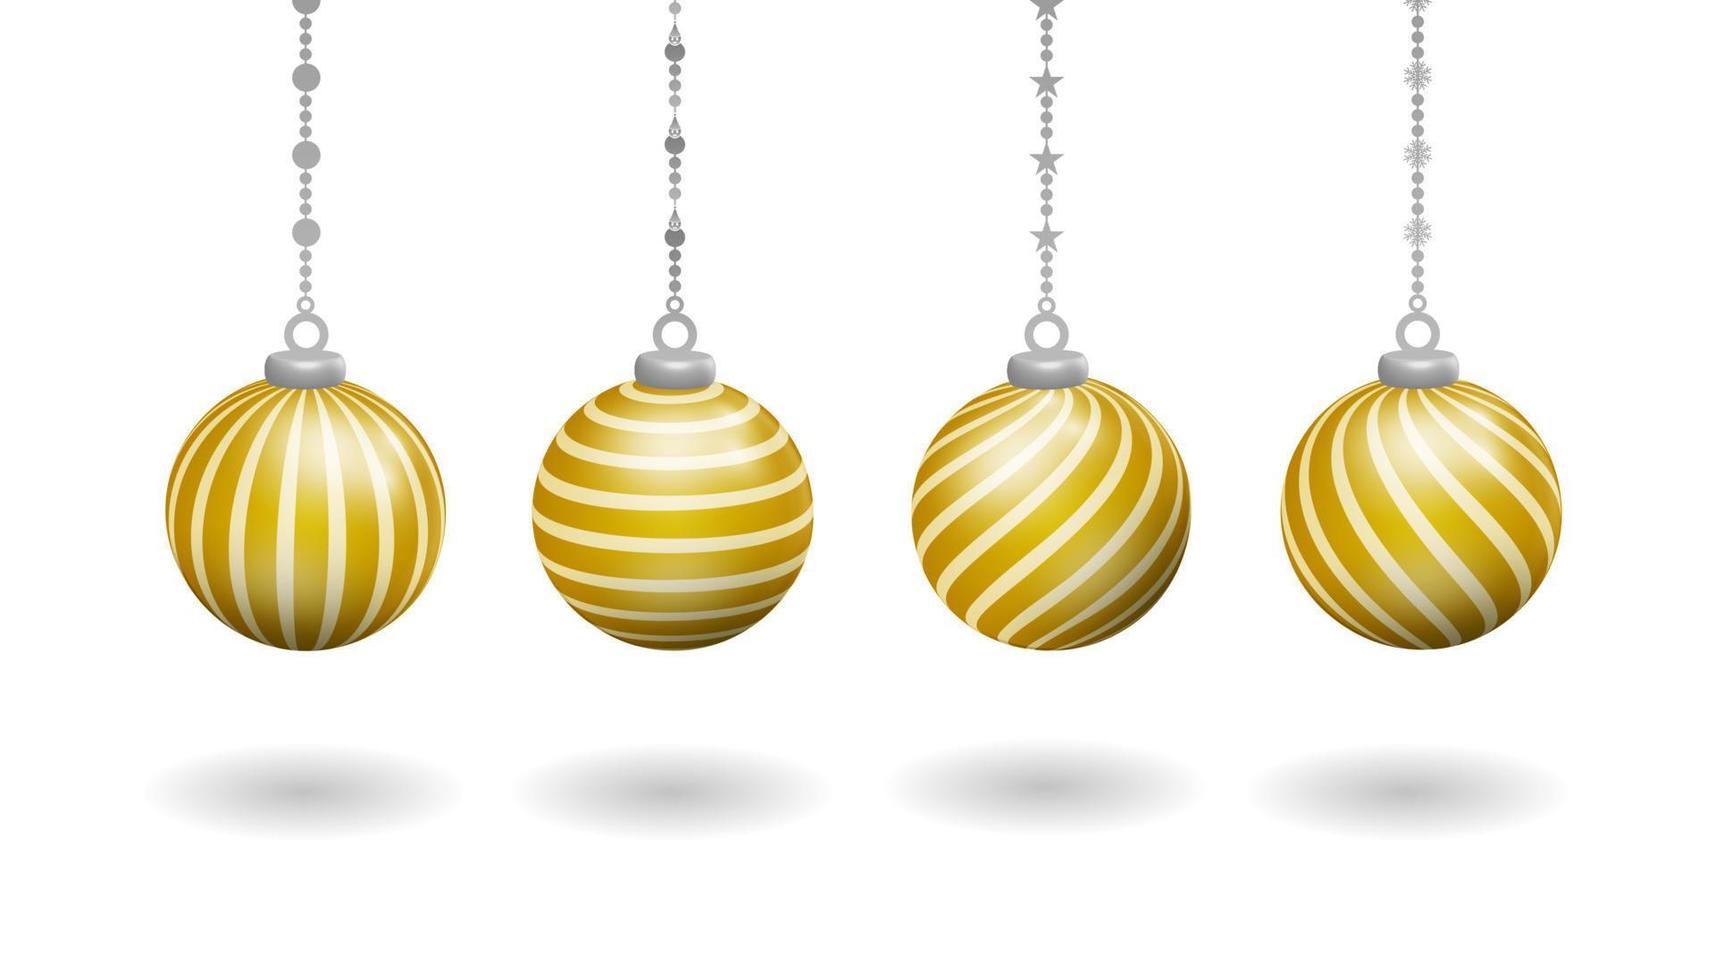 realistisches goldenes weihnachtsdekorationsset mit hängenden kugeln, mit verschiedenen verdrehten linienmustern vektor